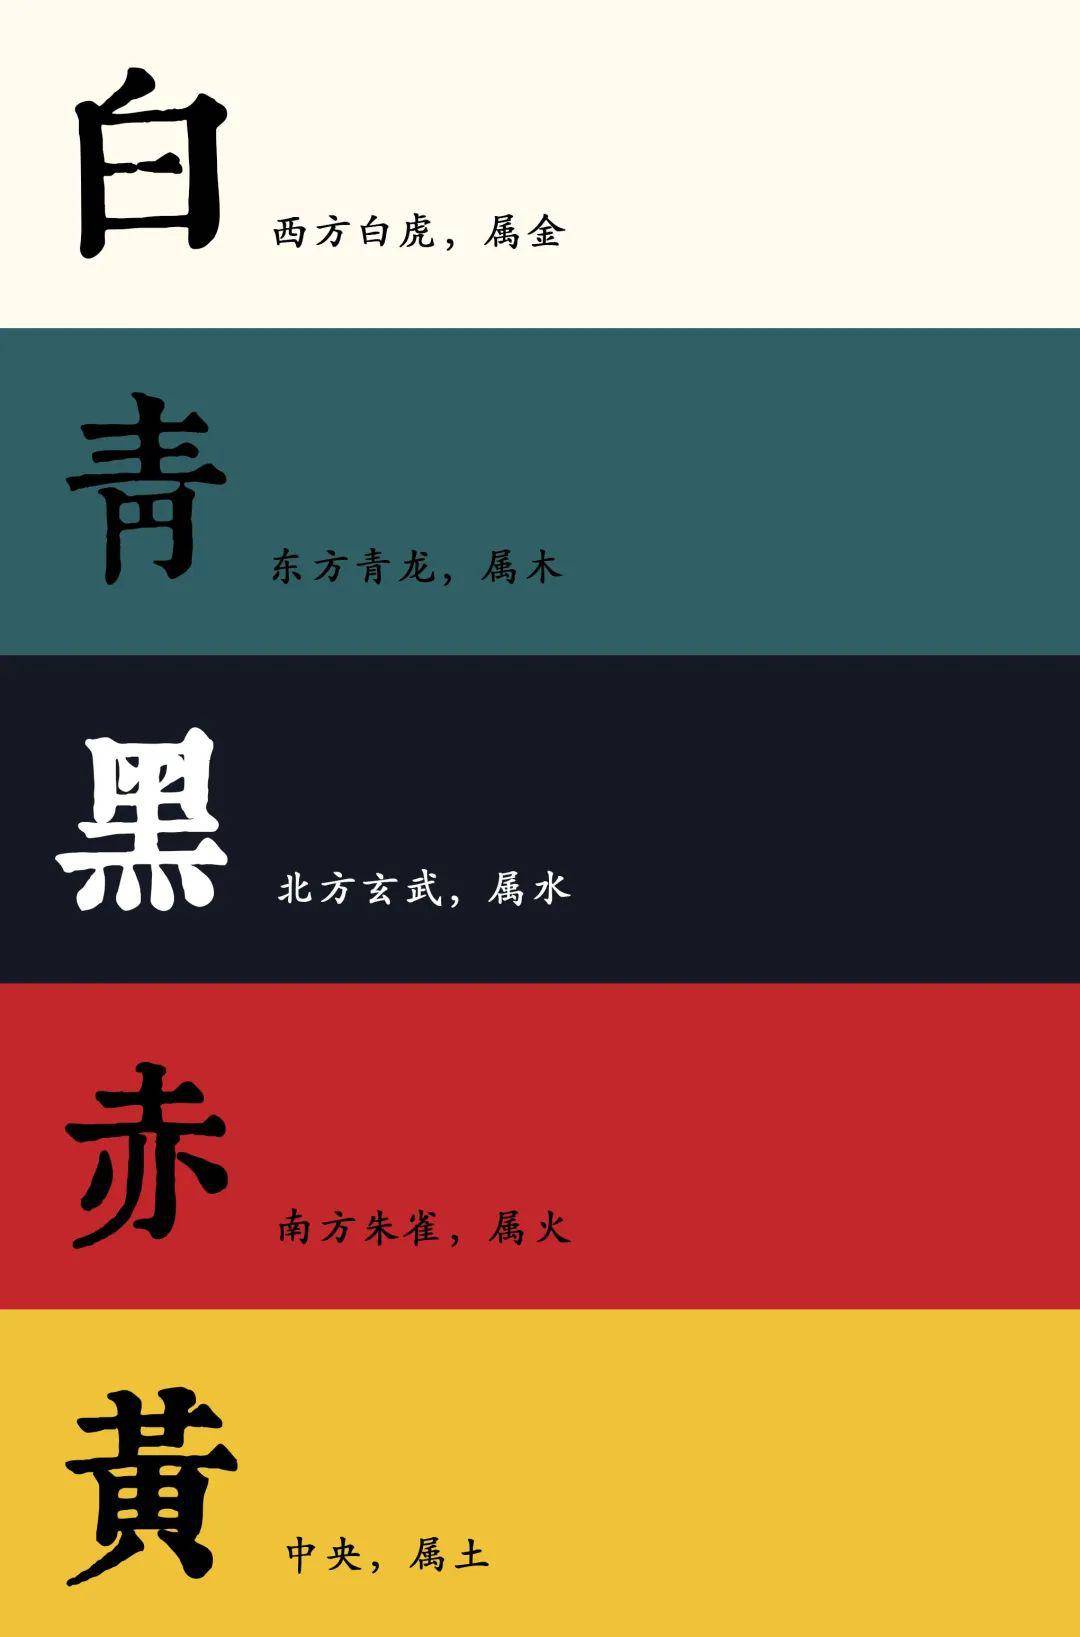 涨知识!中国传统色彩只有五种颜色?